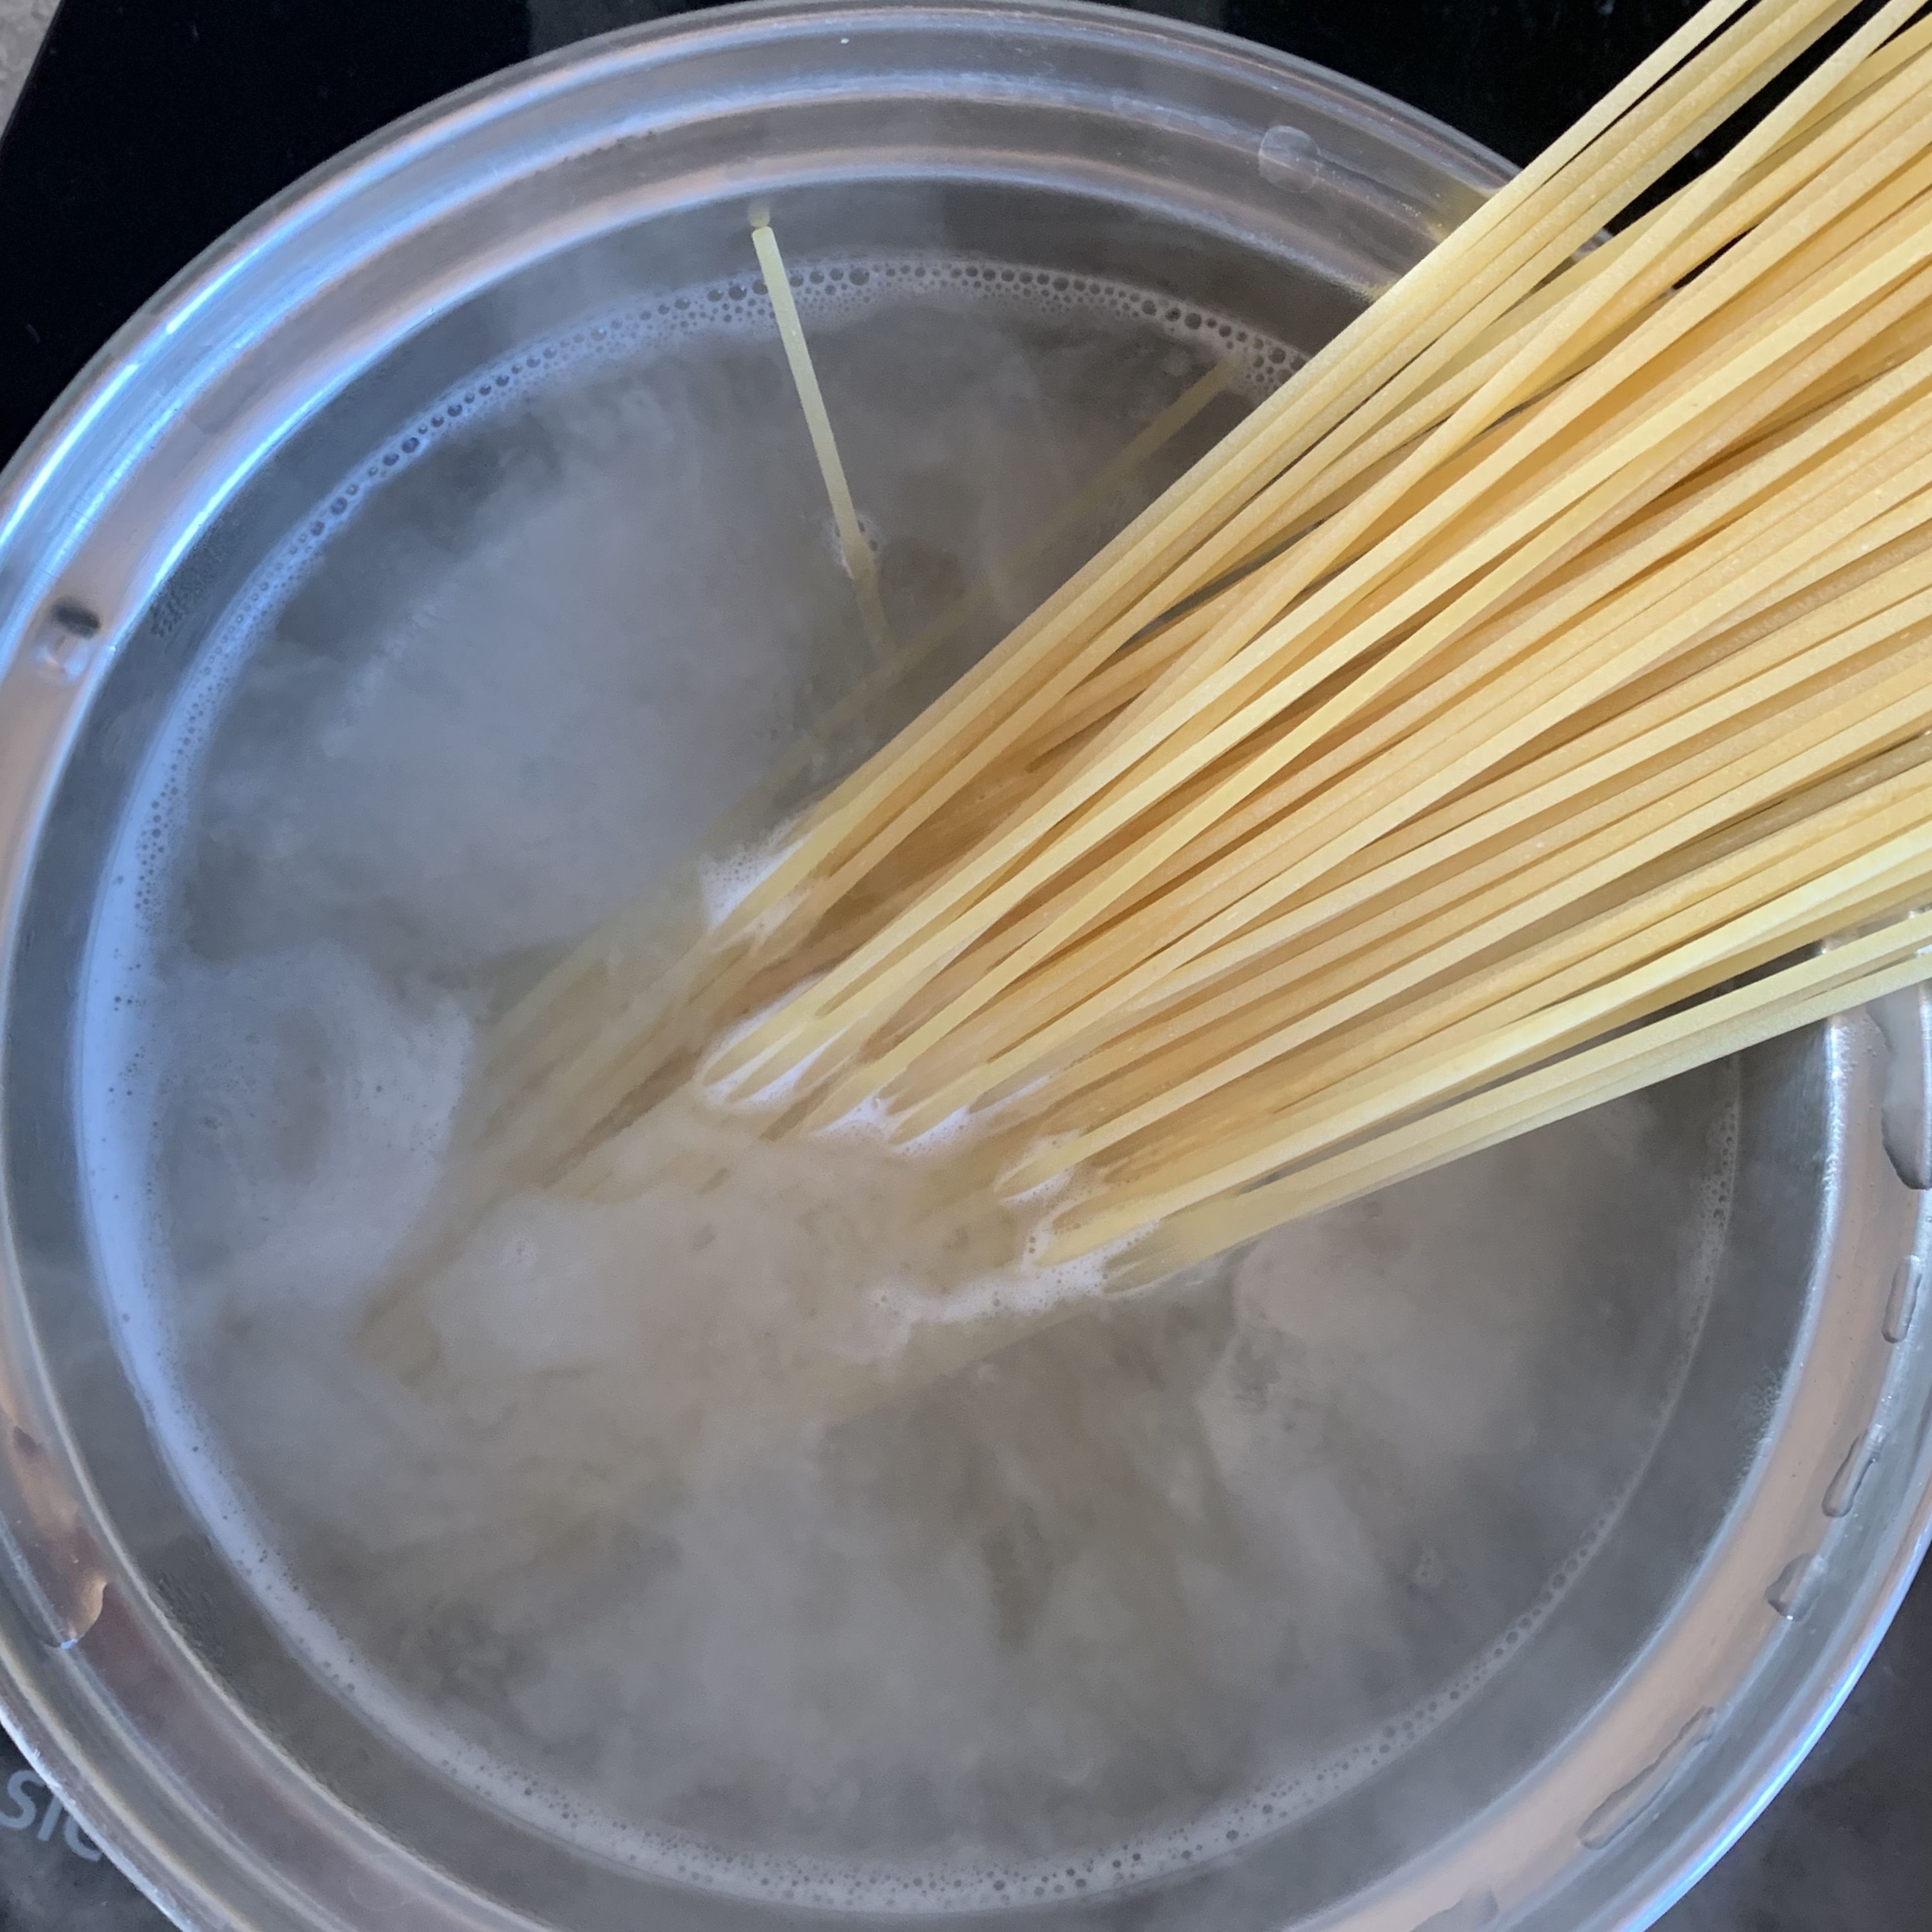 Pasta in einen Topf mit siedendem Salzwasser geben und nach Packungsanweisung ca. 8 – 10 Min. al dente kochen.